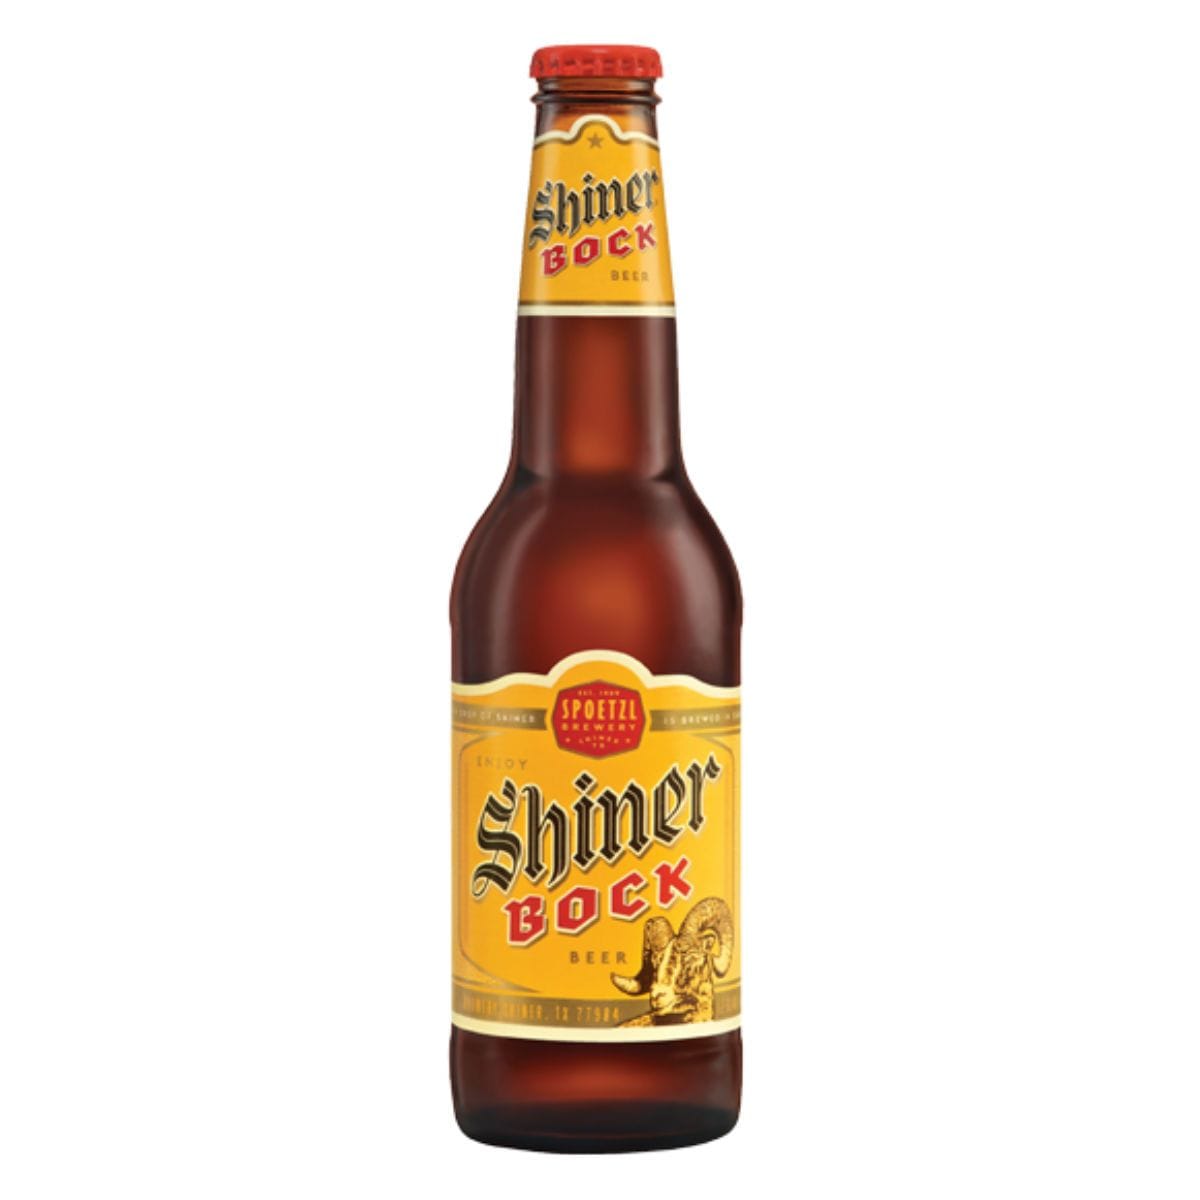 2. Shiner Bock